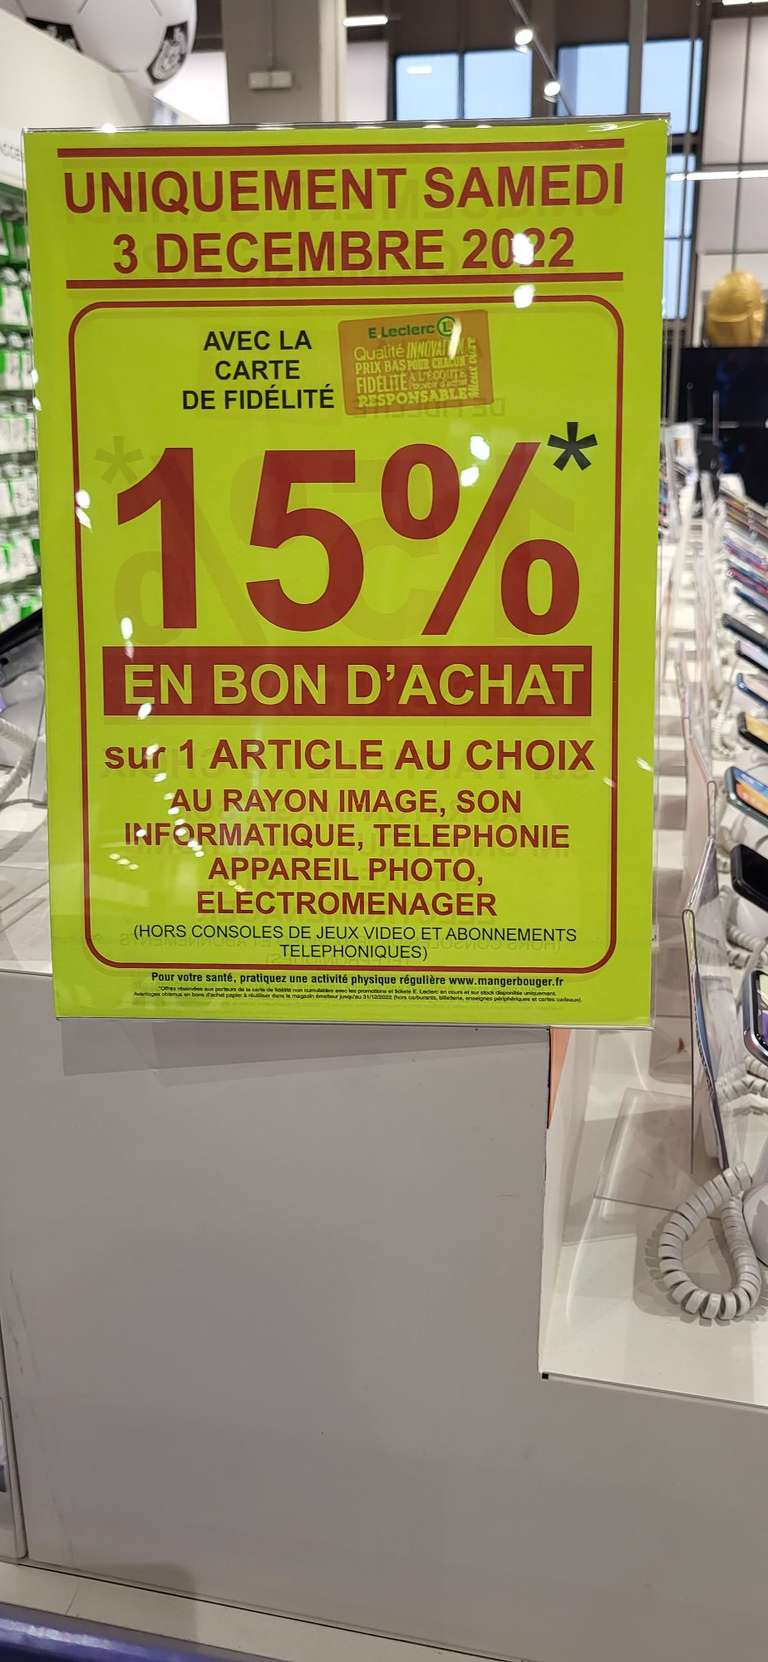 15% offerts en bon d'achat sur un article au choix parmi les rayons image, son, informatique, téléphonie, photo & électro - Thionville (57)